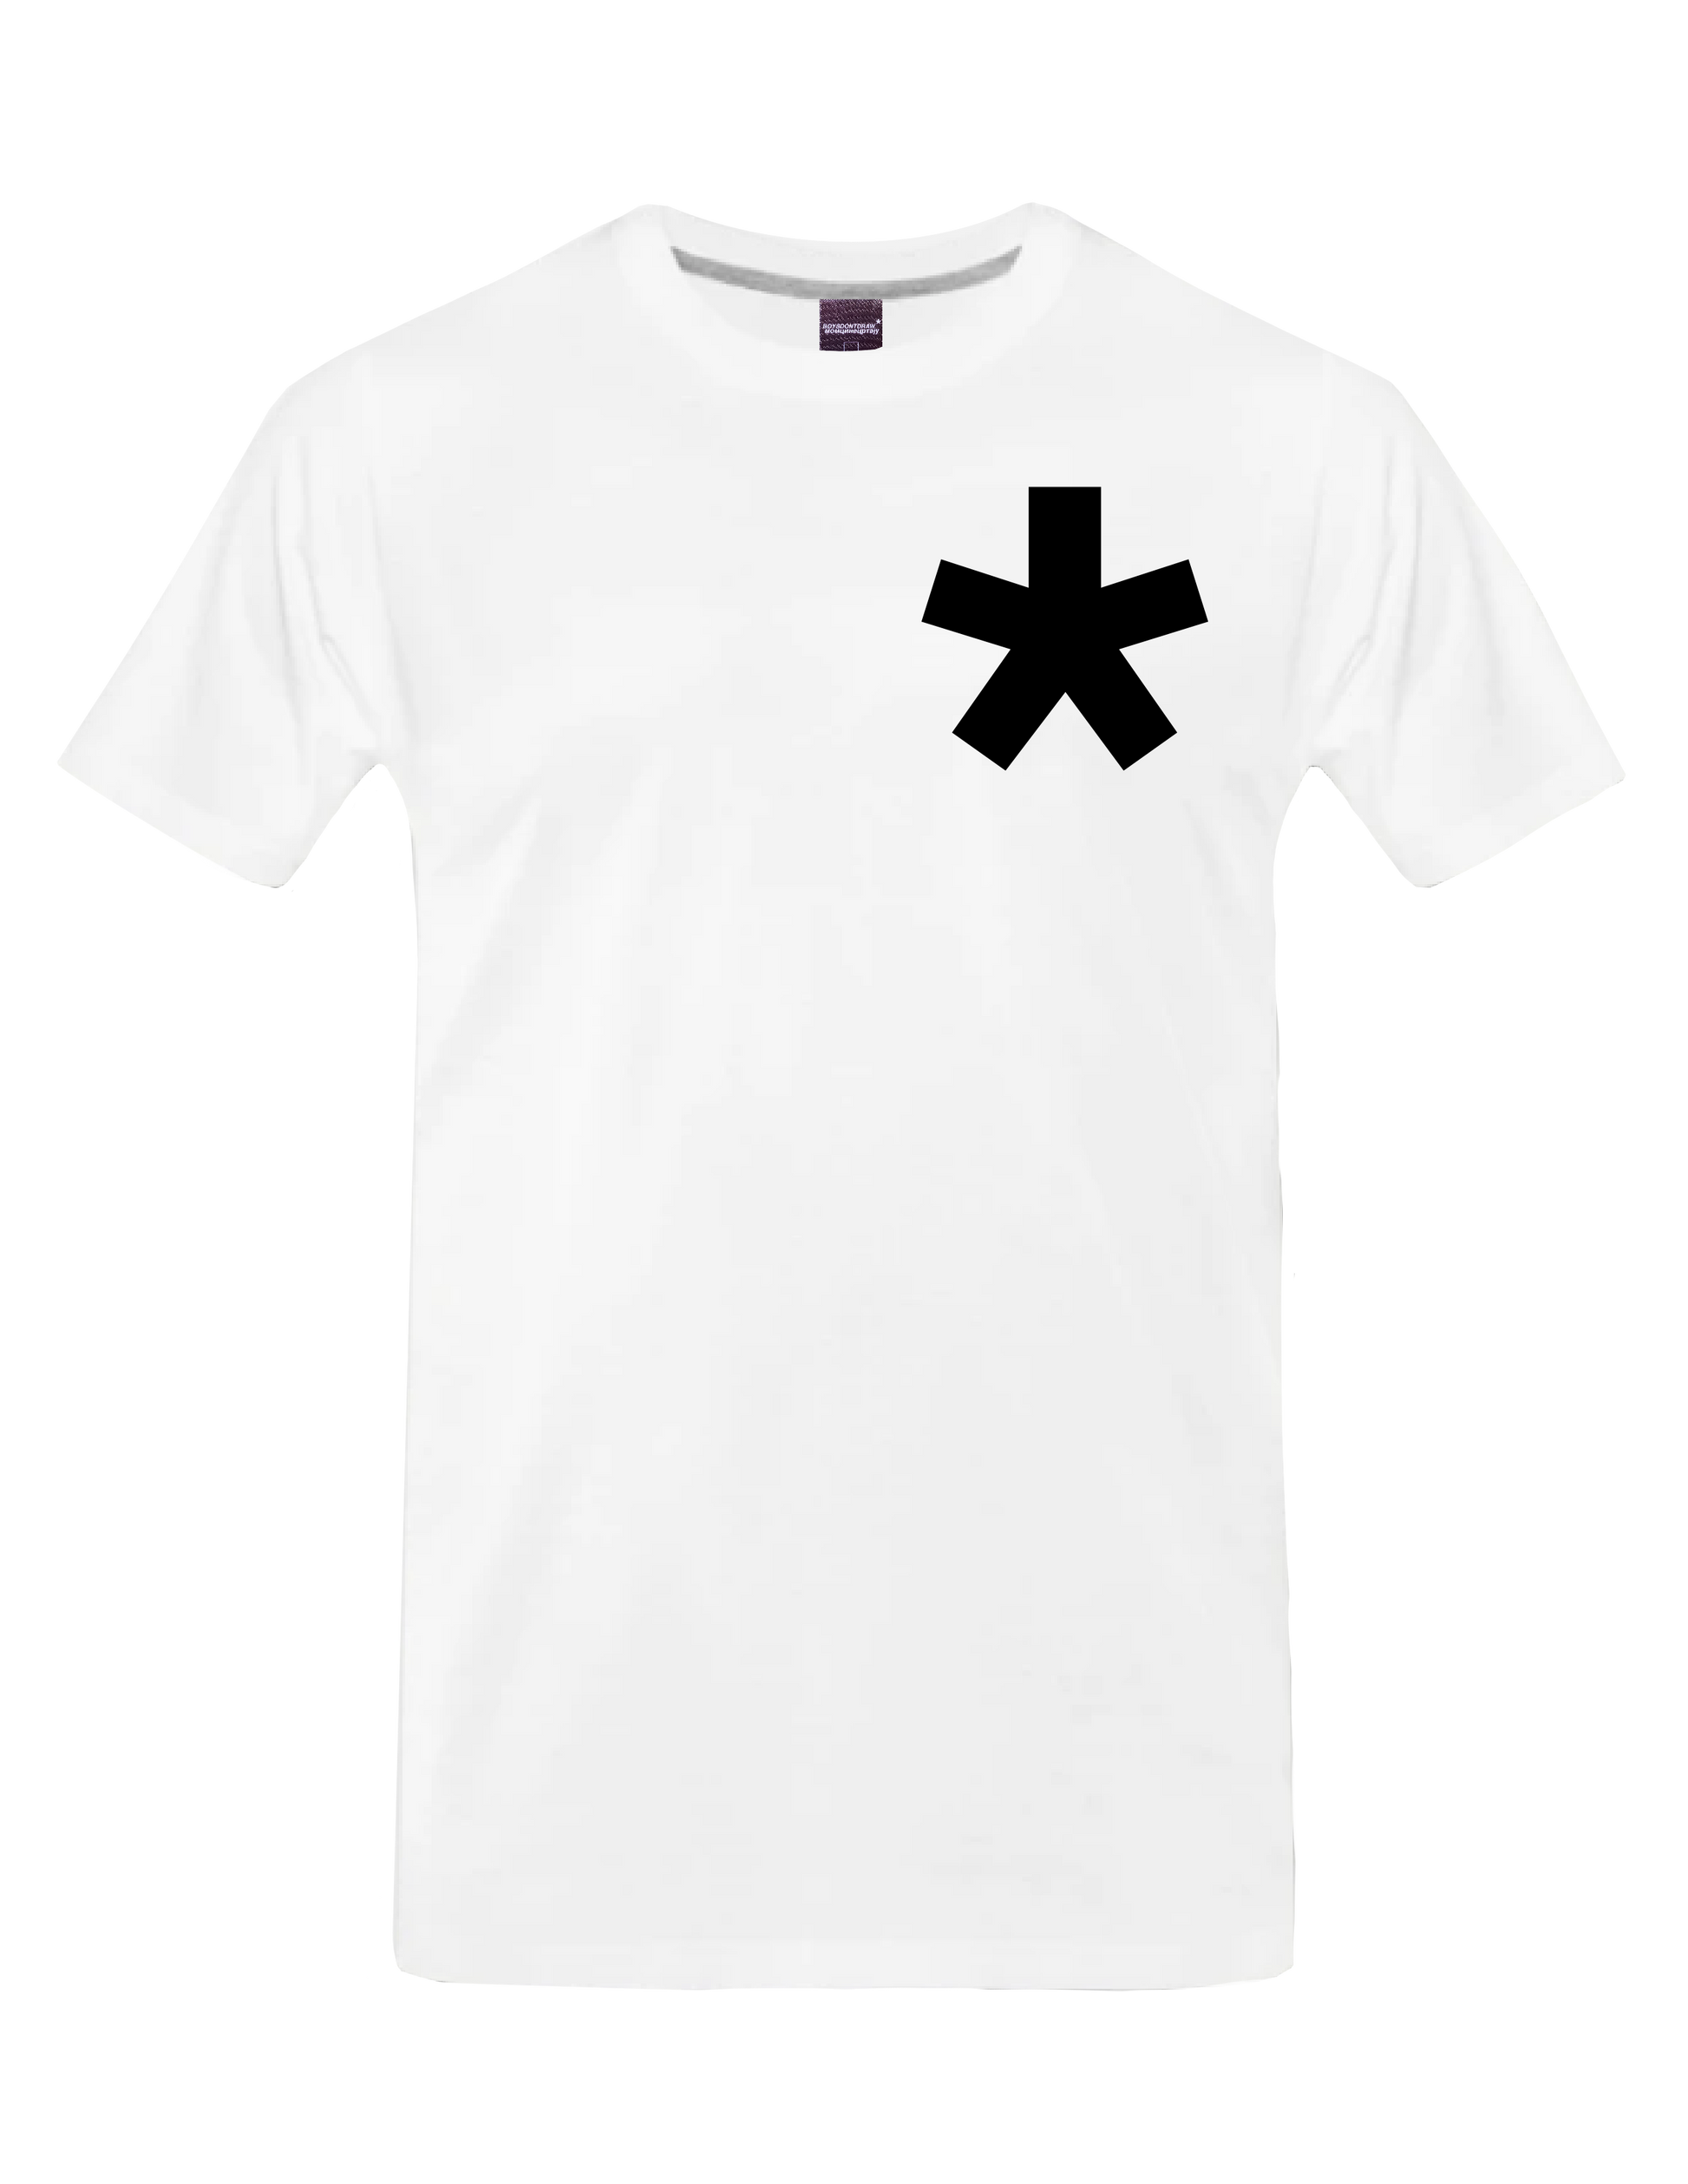 BOYSDONTDRAW Classic - T-Shirt (White) - BOYSDONTDRAW